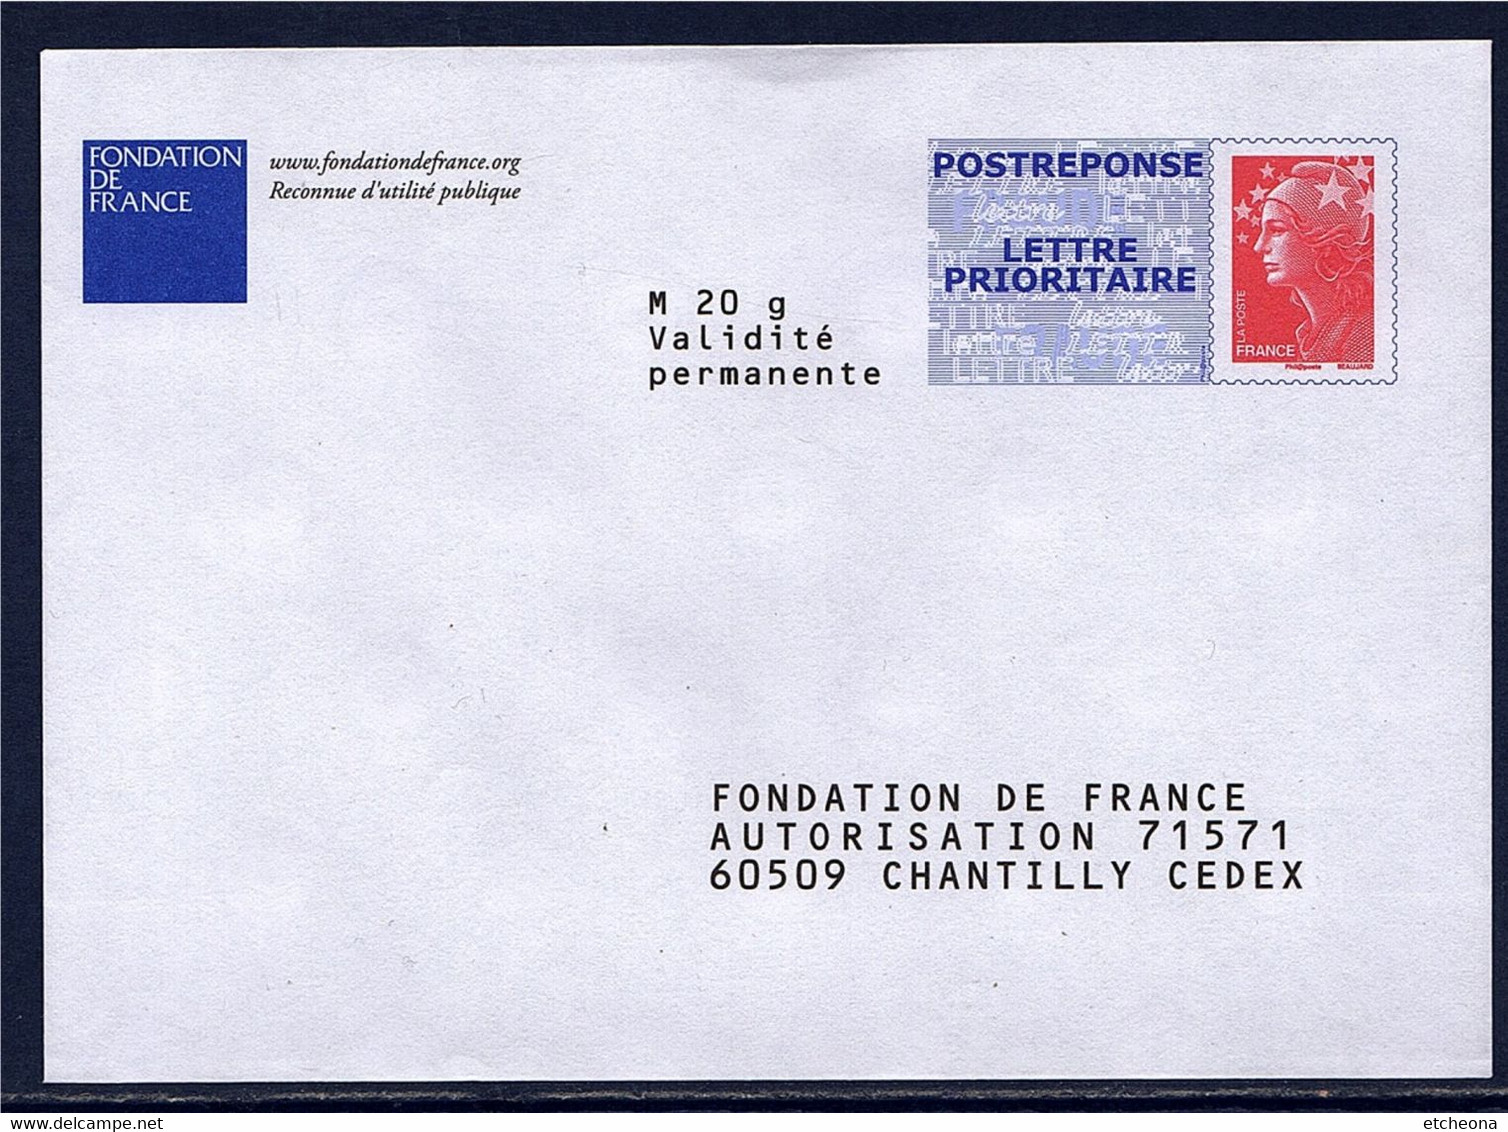 Fondation De France Enveloppe Postréponse Marianne Beaujard Neuve TVP LP Lot 09P344 Type N°4230 - PAP: Antwort